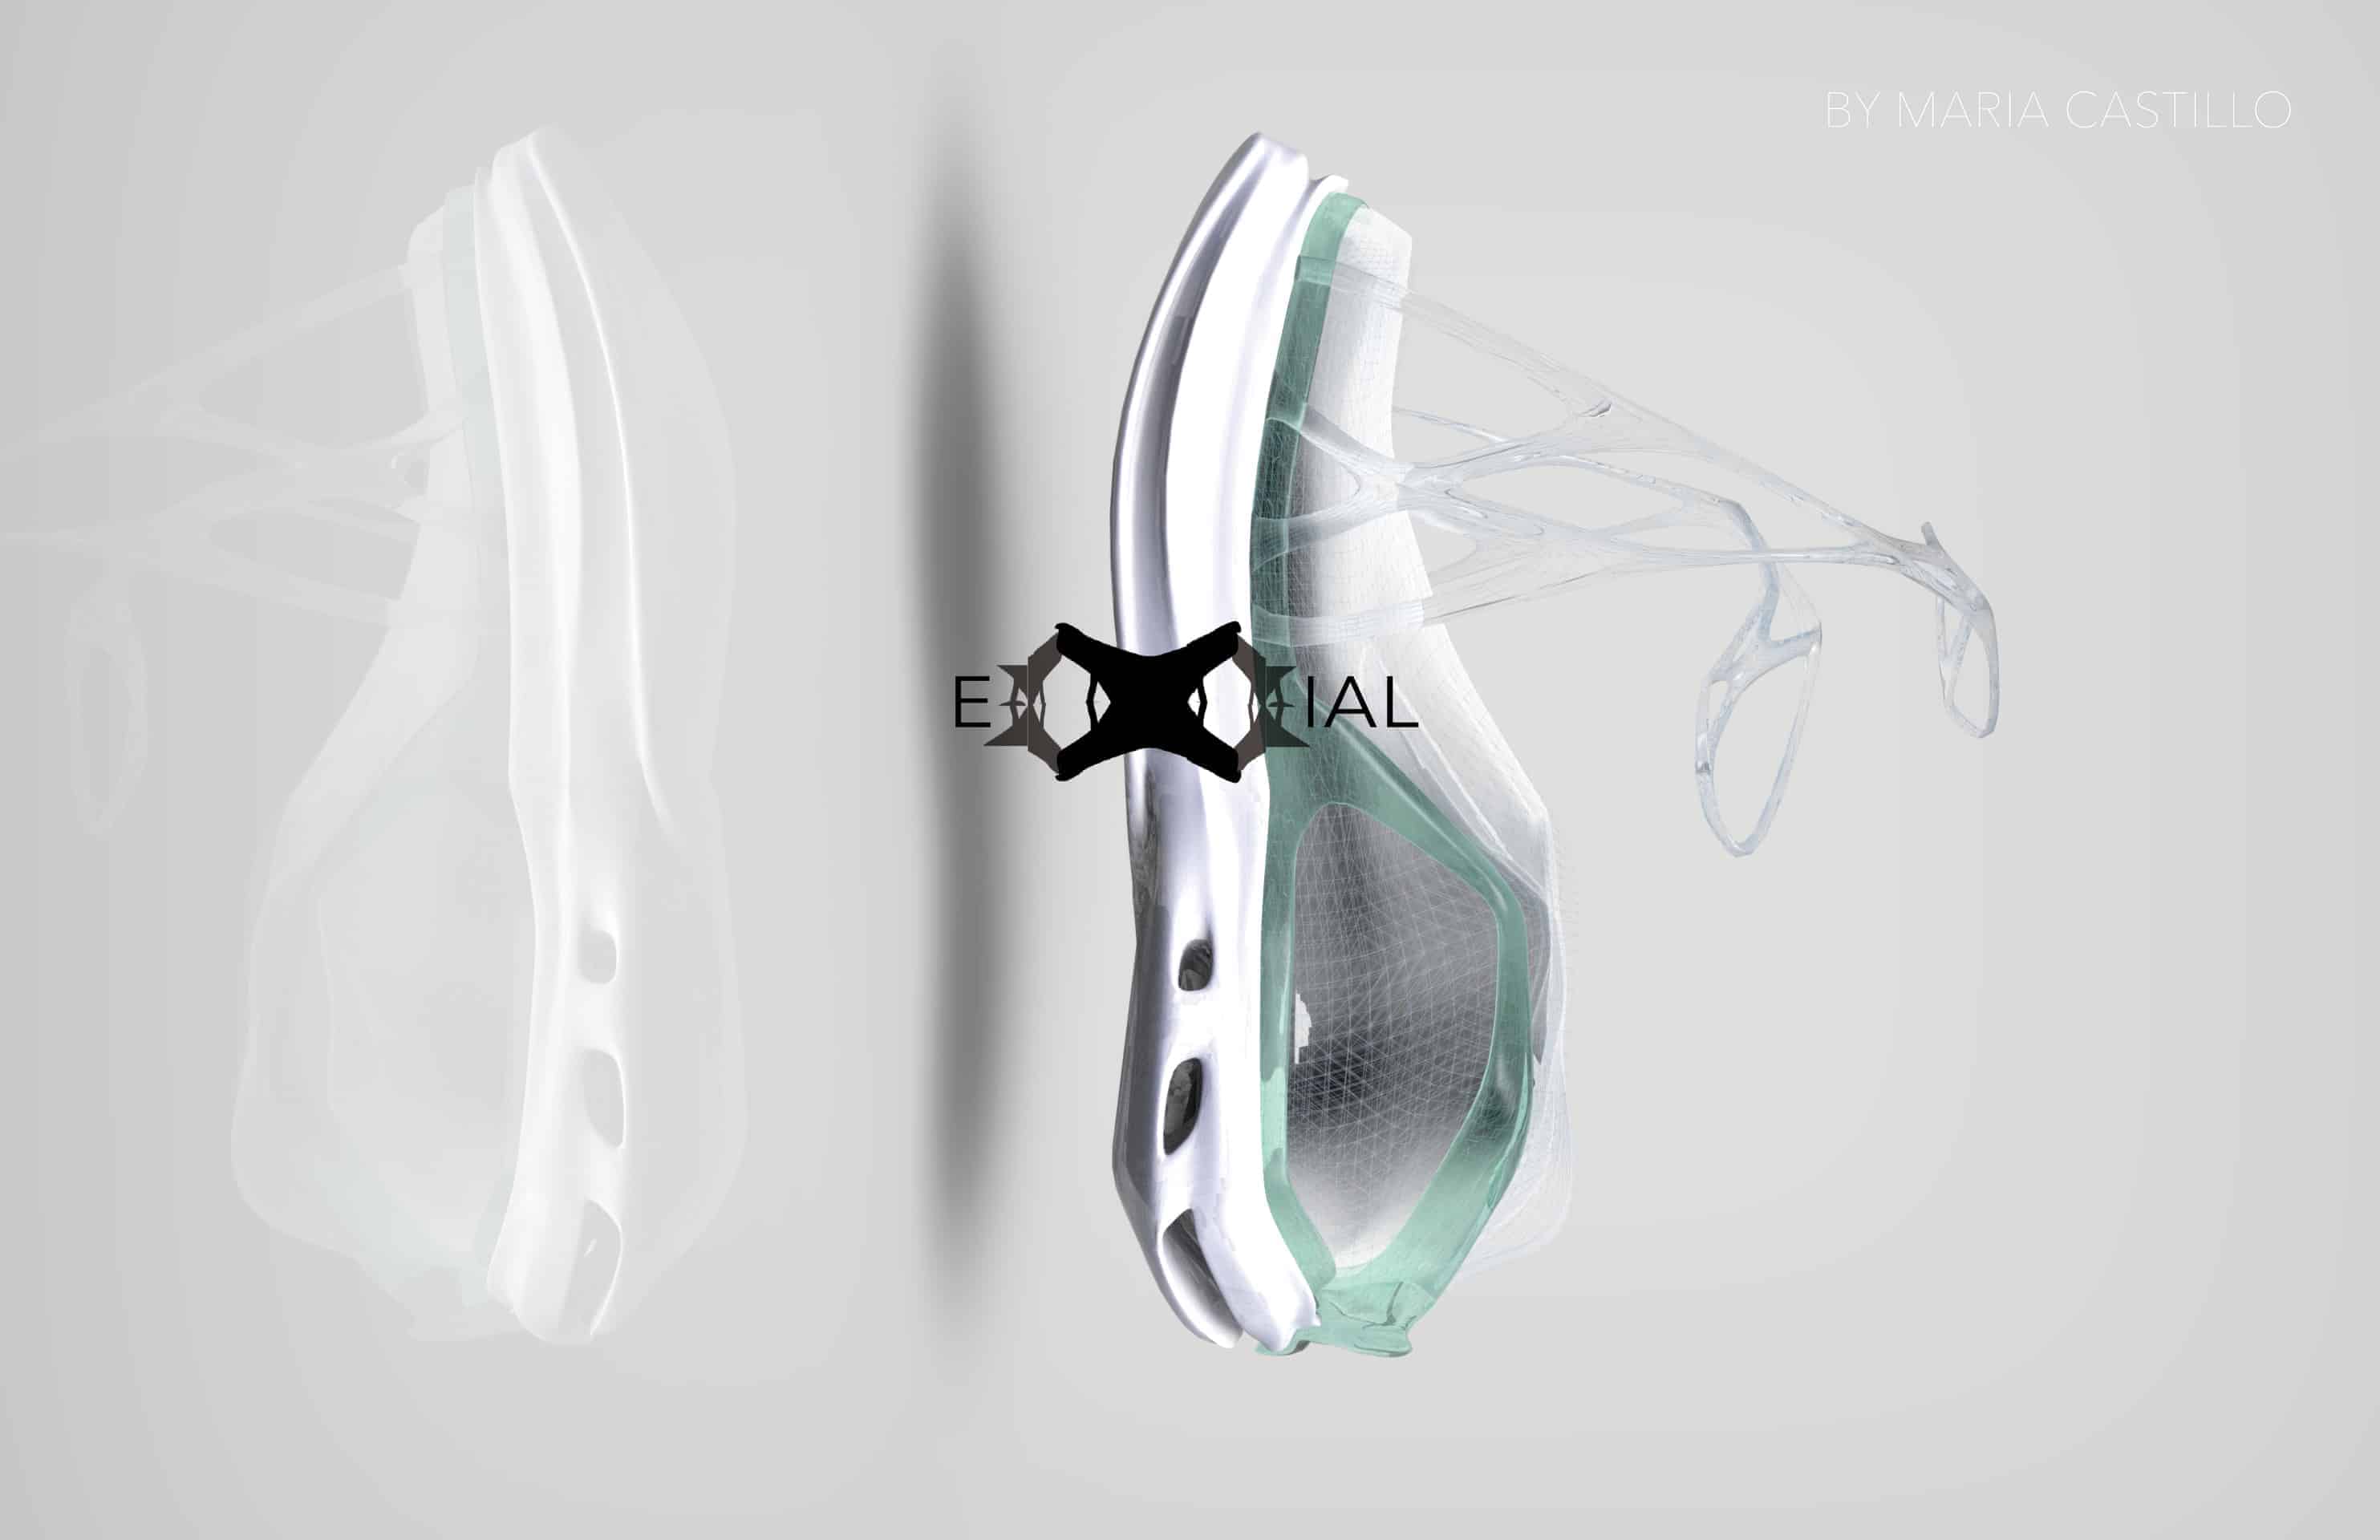 Exial by Maria Castillo | Design Ideas